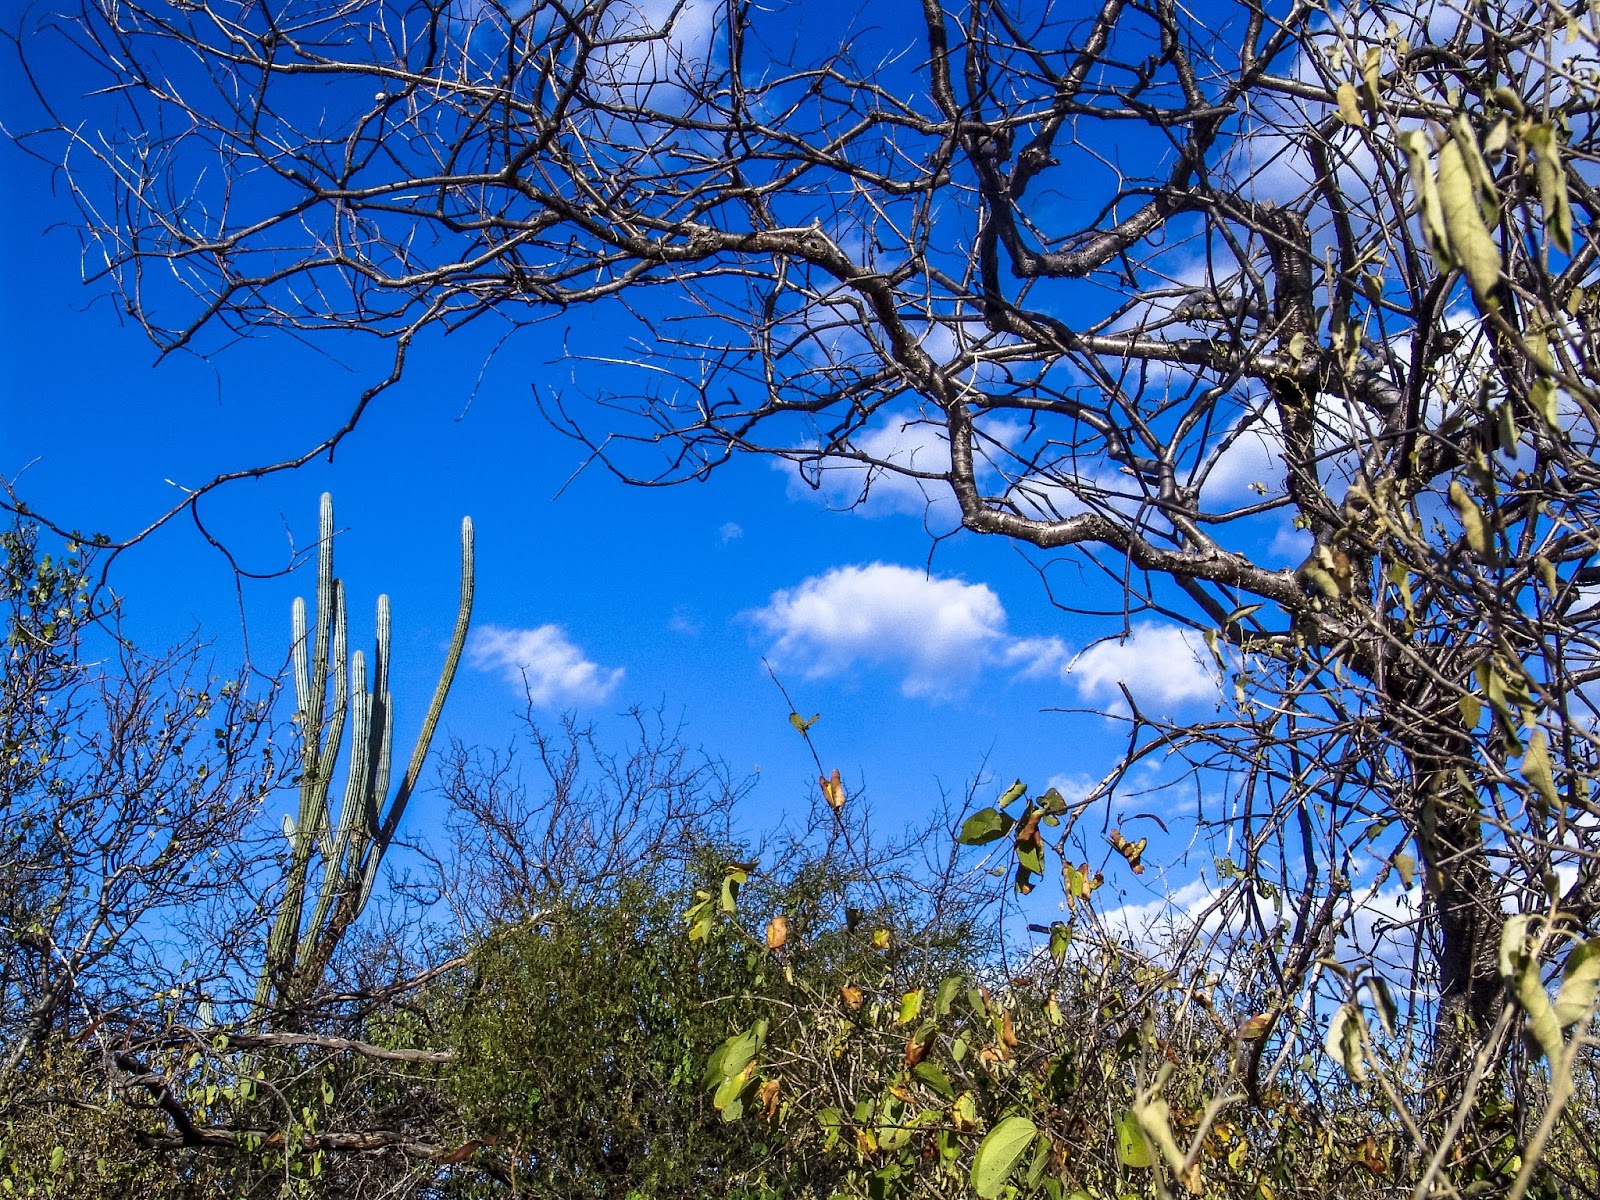 Trecho de caatinga, bioma predominante em Petrolina, PE. A vegetação inclui arbustos, cactos e árvores de galhos finos e retorcidos. O céu está azul, quase sem nuvens